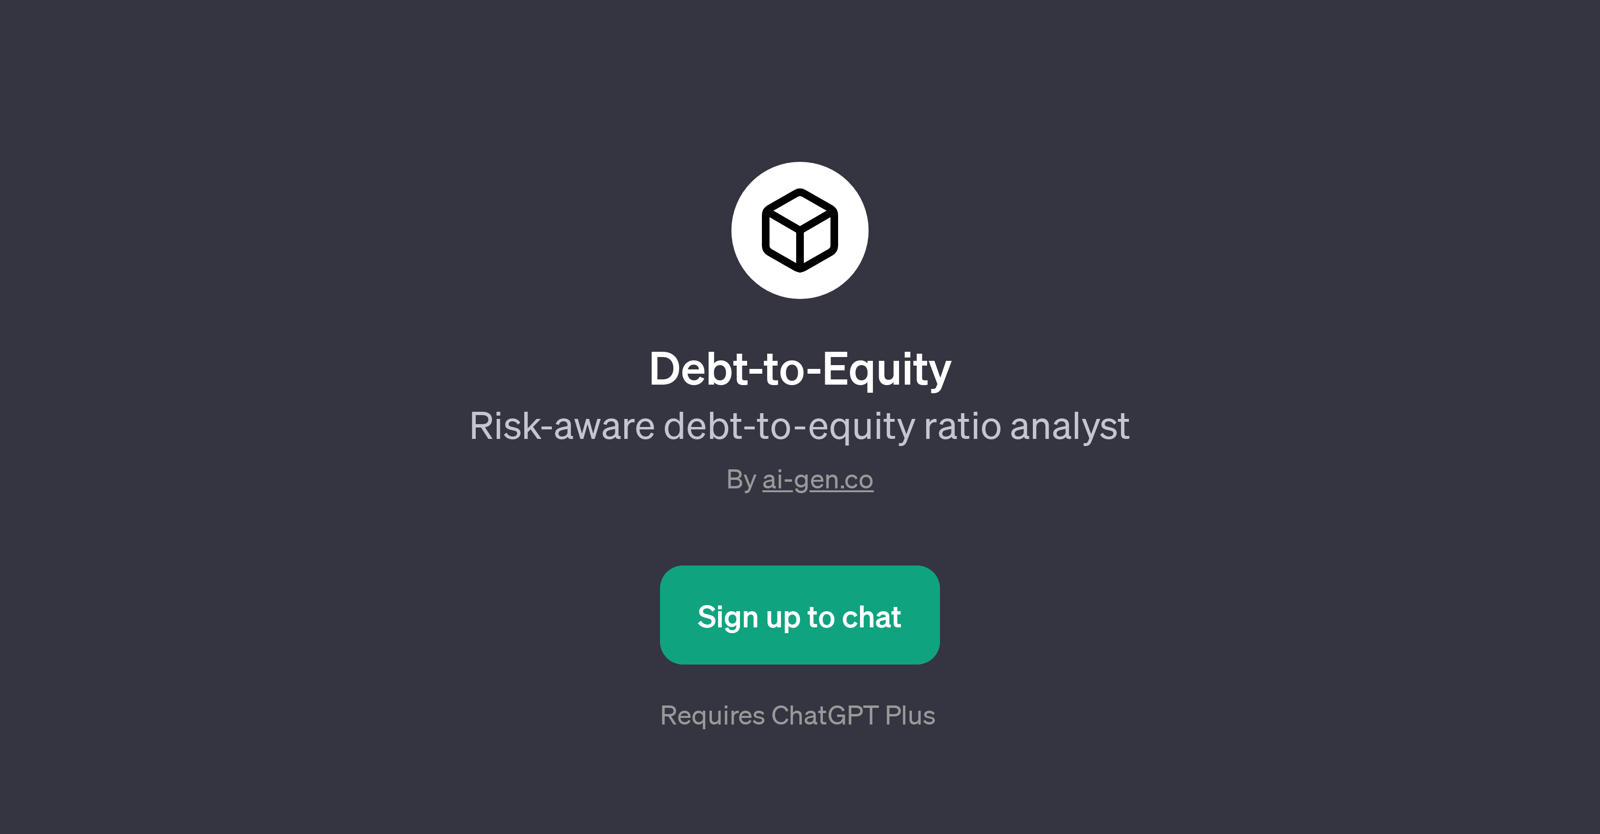 Debt-to-Equity website